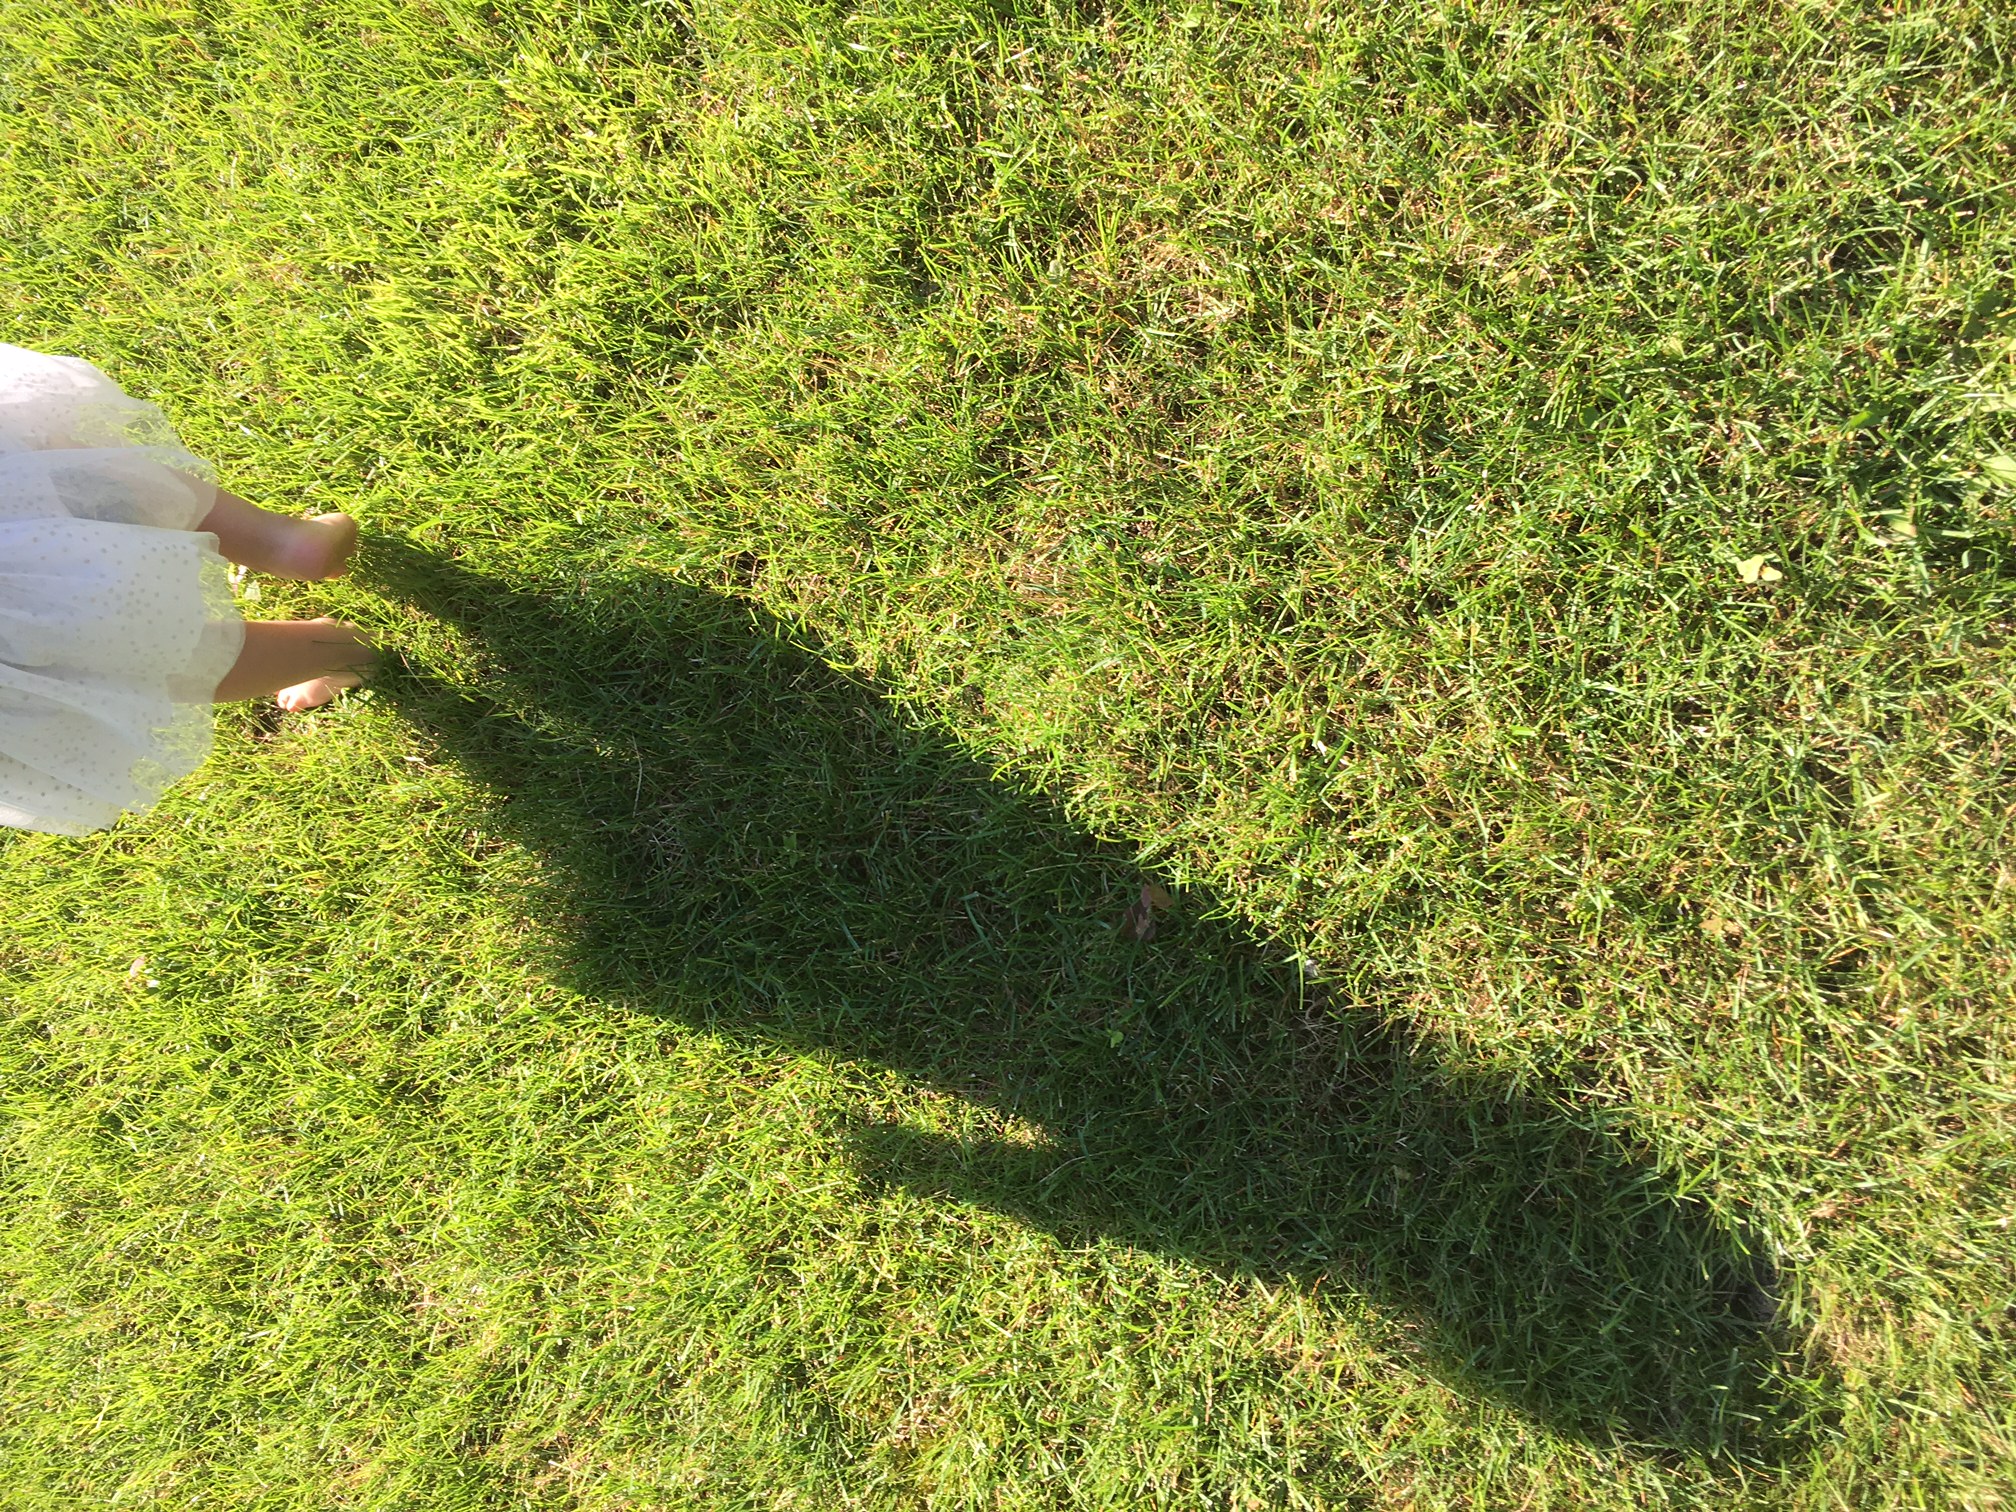 grass-shadow-feet.jpg